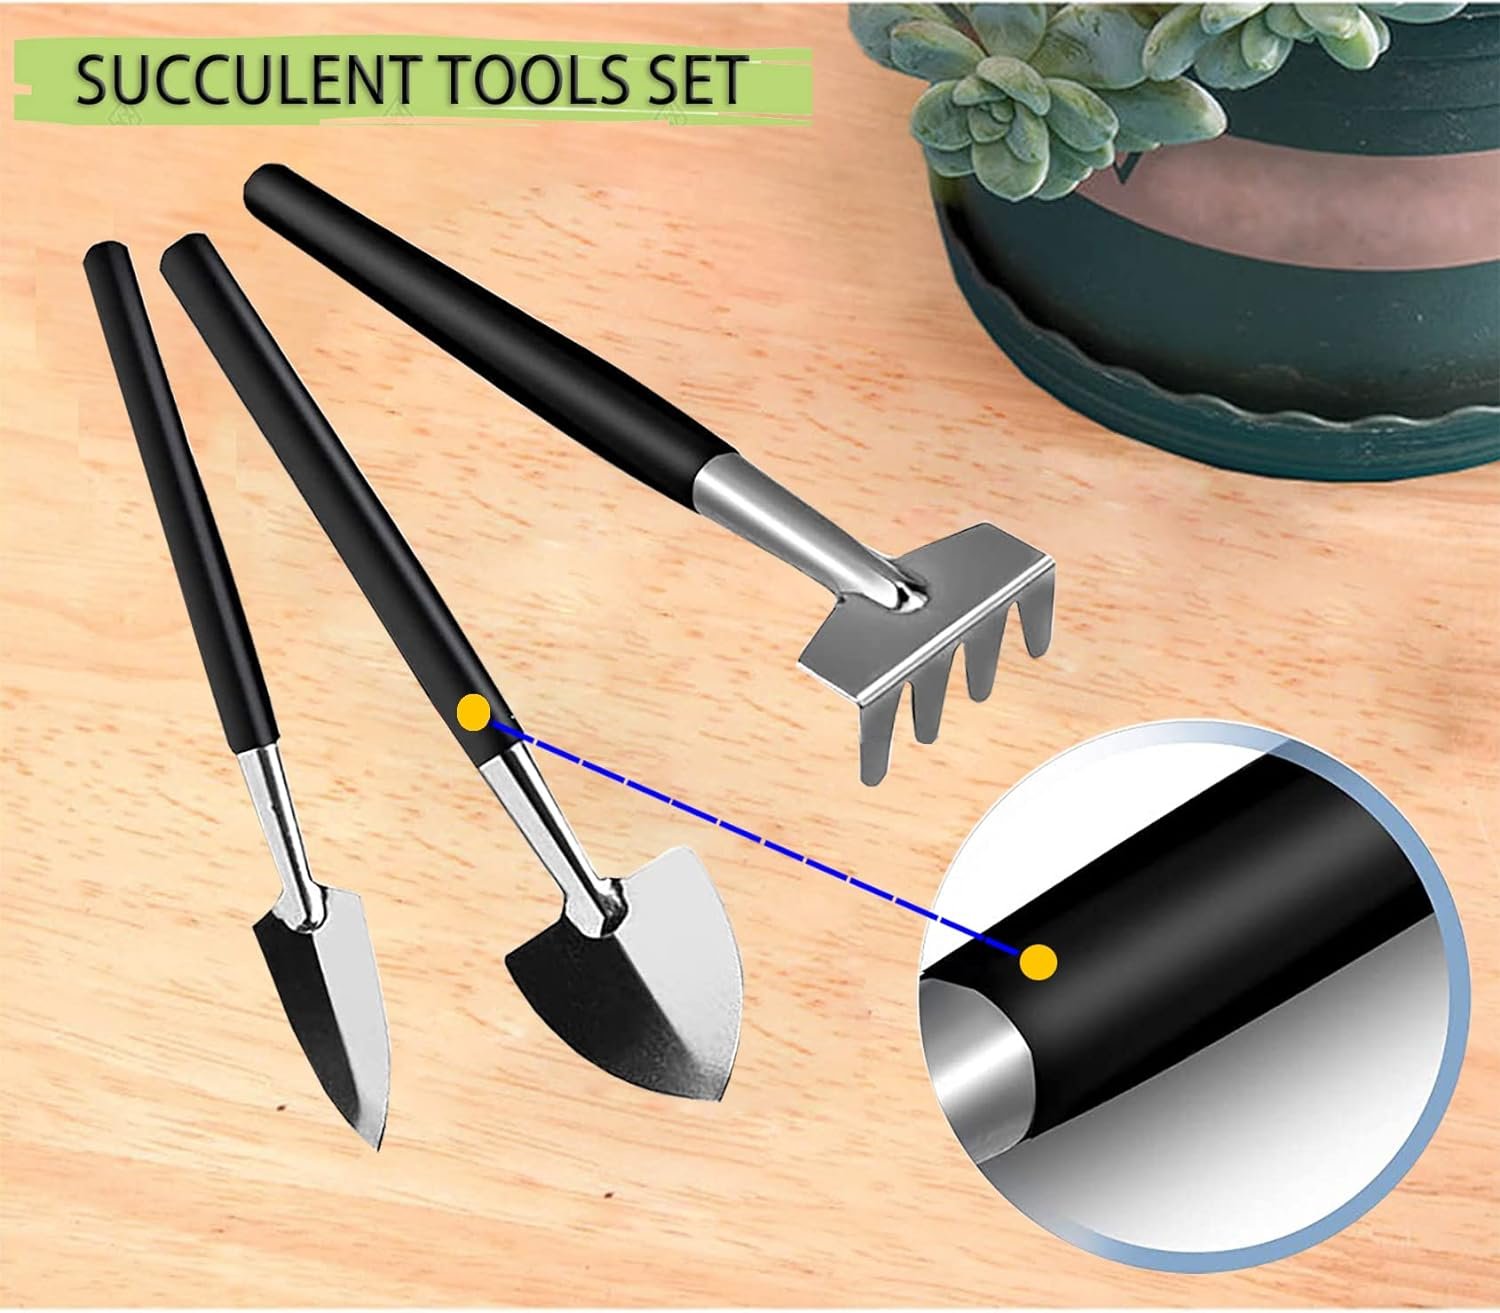 Wobodan Succulent Tools Set Review